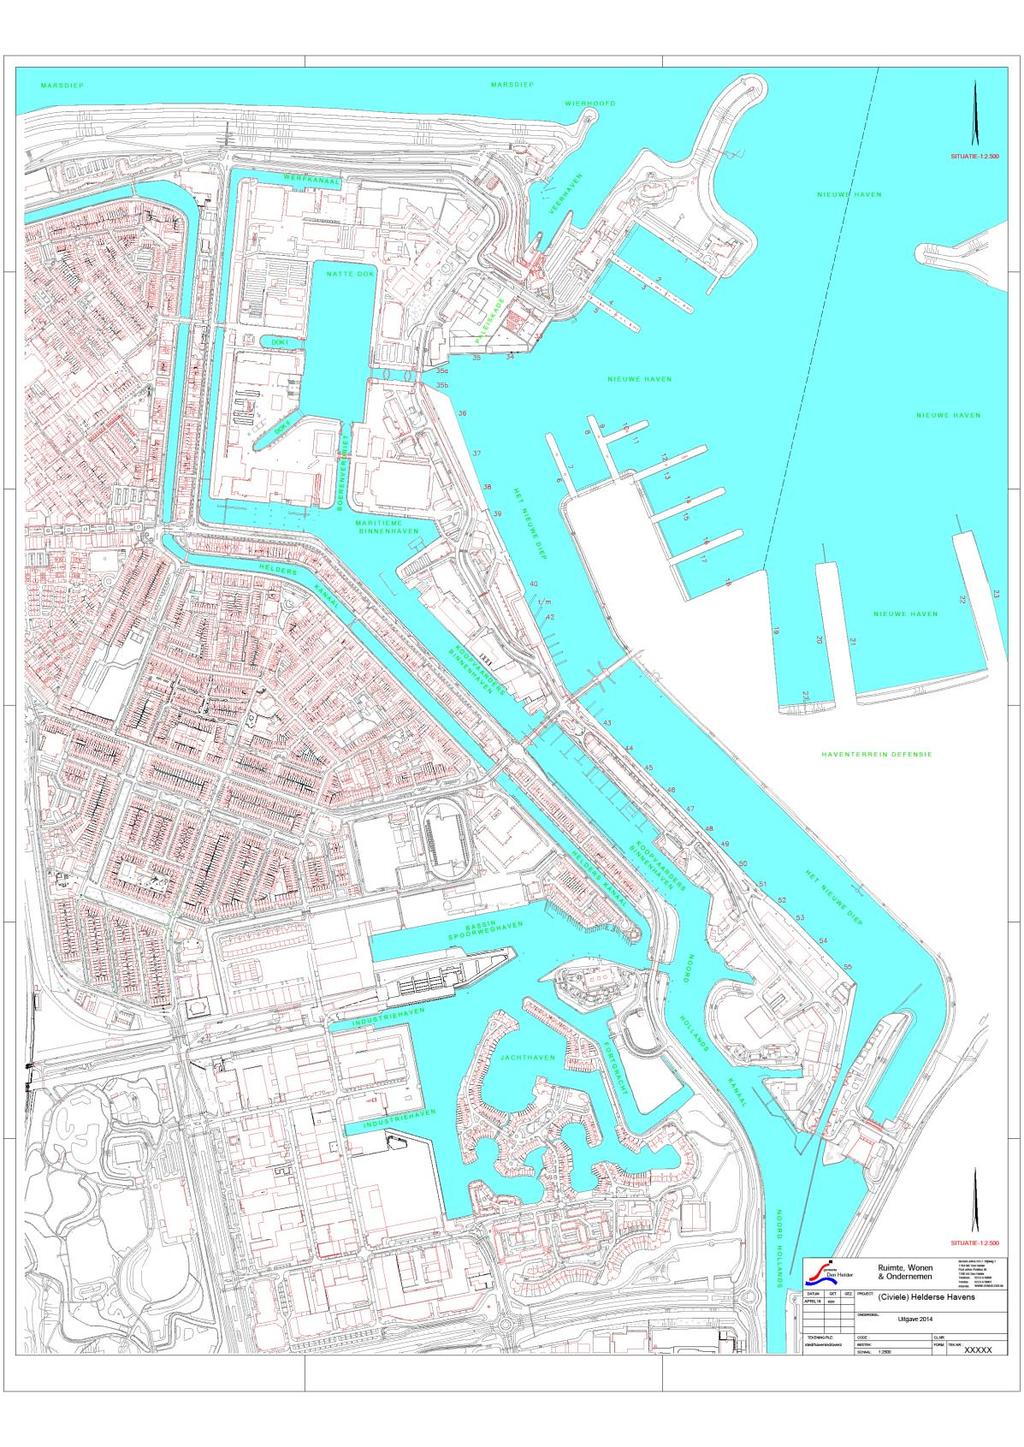 Bijlage 1: Beheersgebied haven Den Helder Niet op de kaart aangegeven: De loskade aan het Noord-Hollands Kanaal